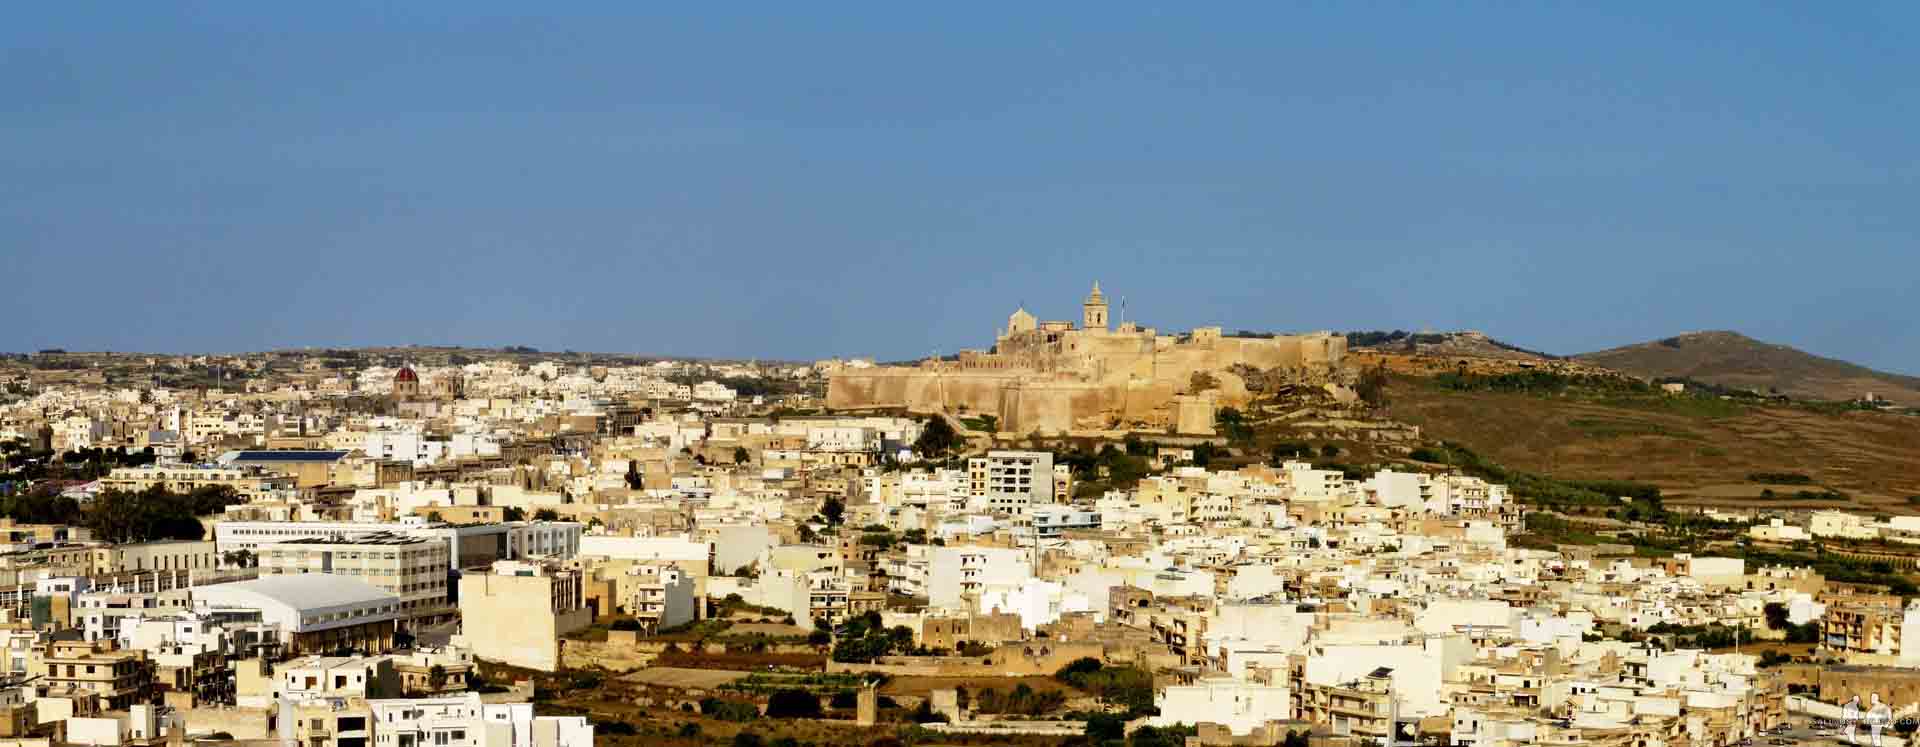 DIARIO Una semana en Malta por libre Pano, Ciudadela de Victoria desde Xaghra, Gozo